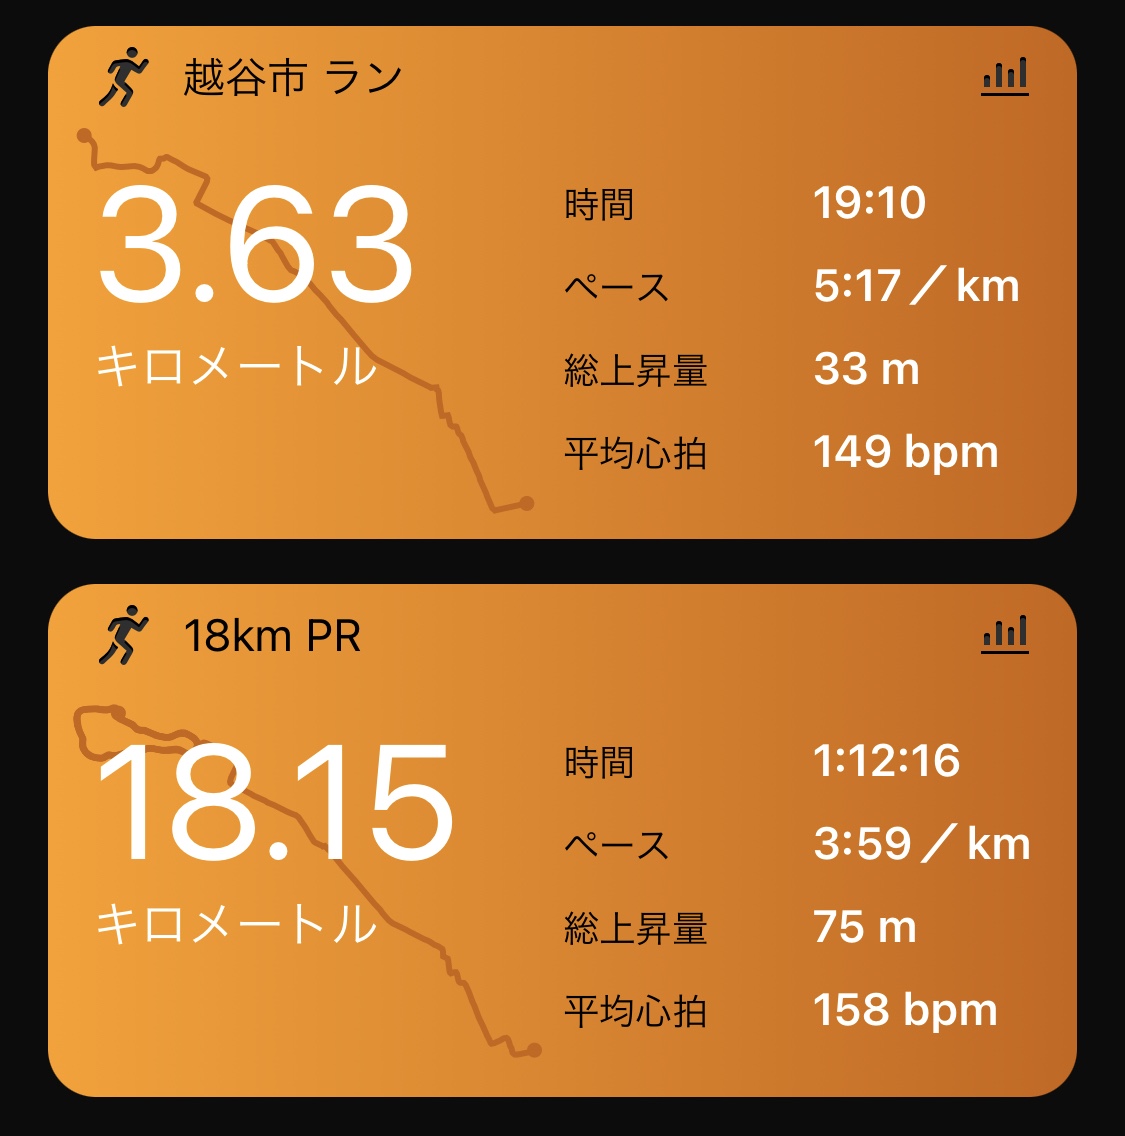 18.1km + 3.6km